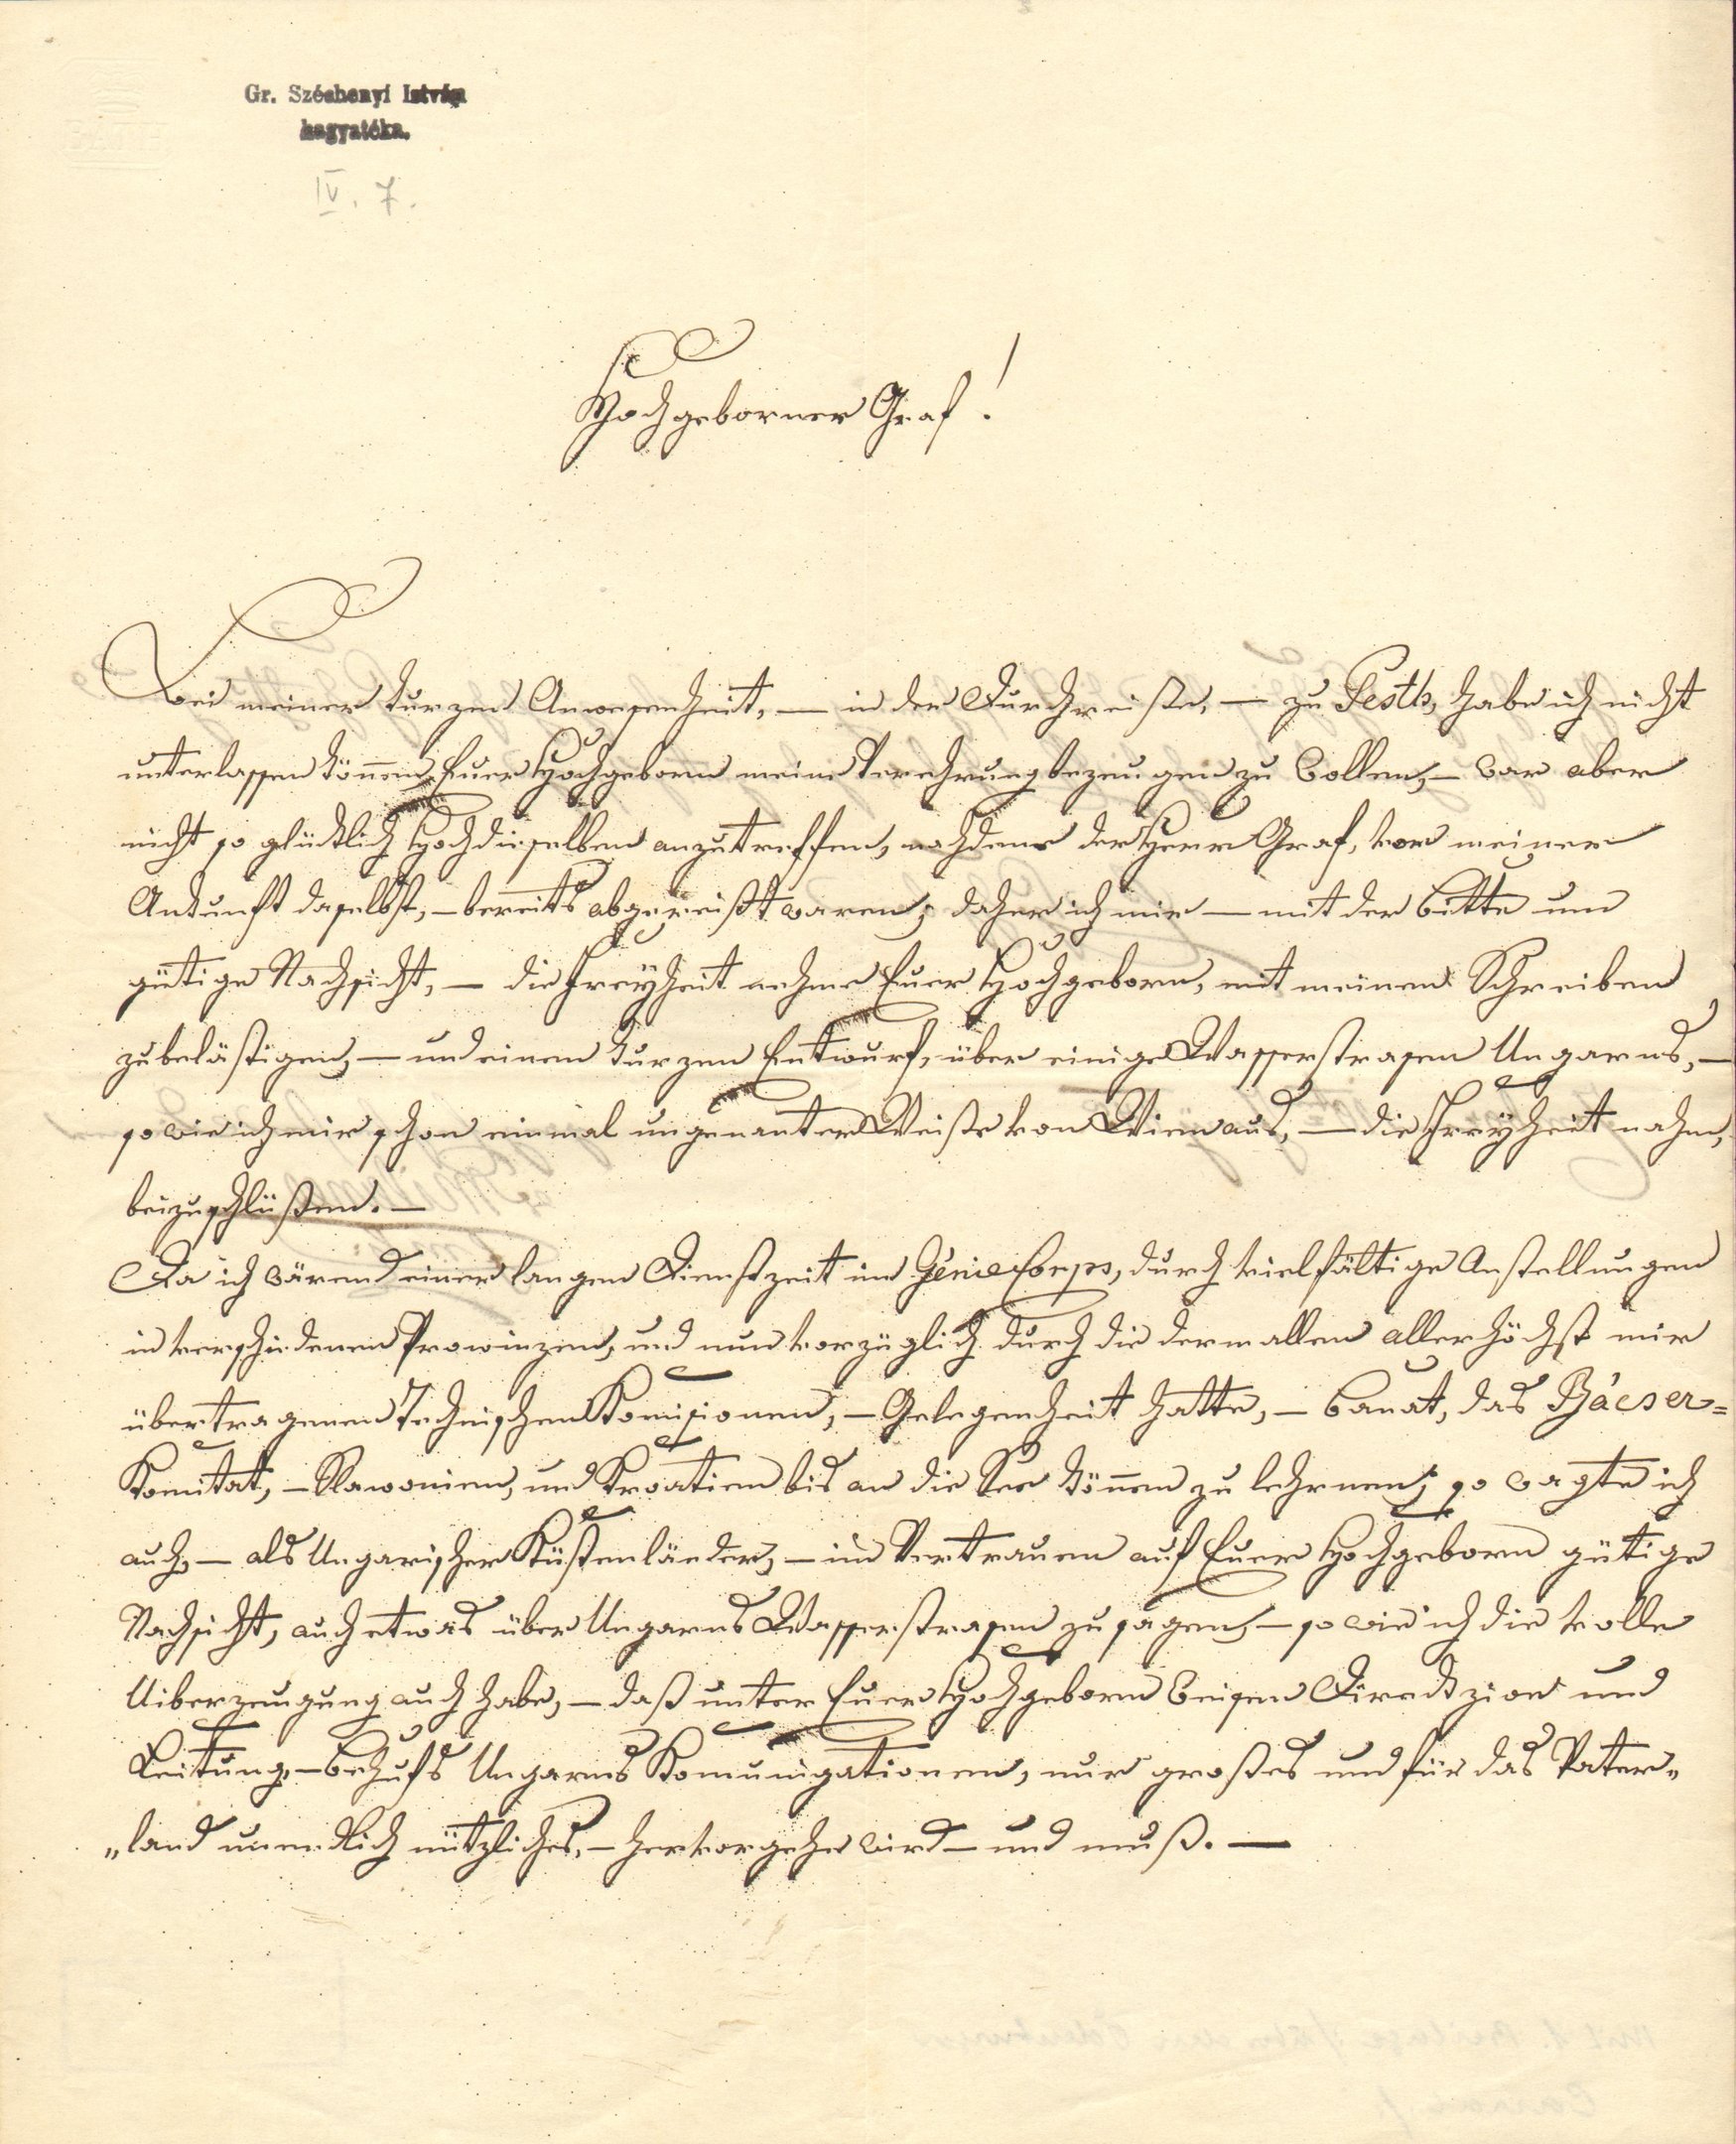 Mileinet levele Széchenyi Istvánhoz (Magyar Környezetvédelmi és Vízügyi Múzeum - Duna Múzeum CC BY-NC-SA)